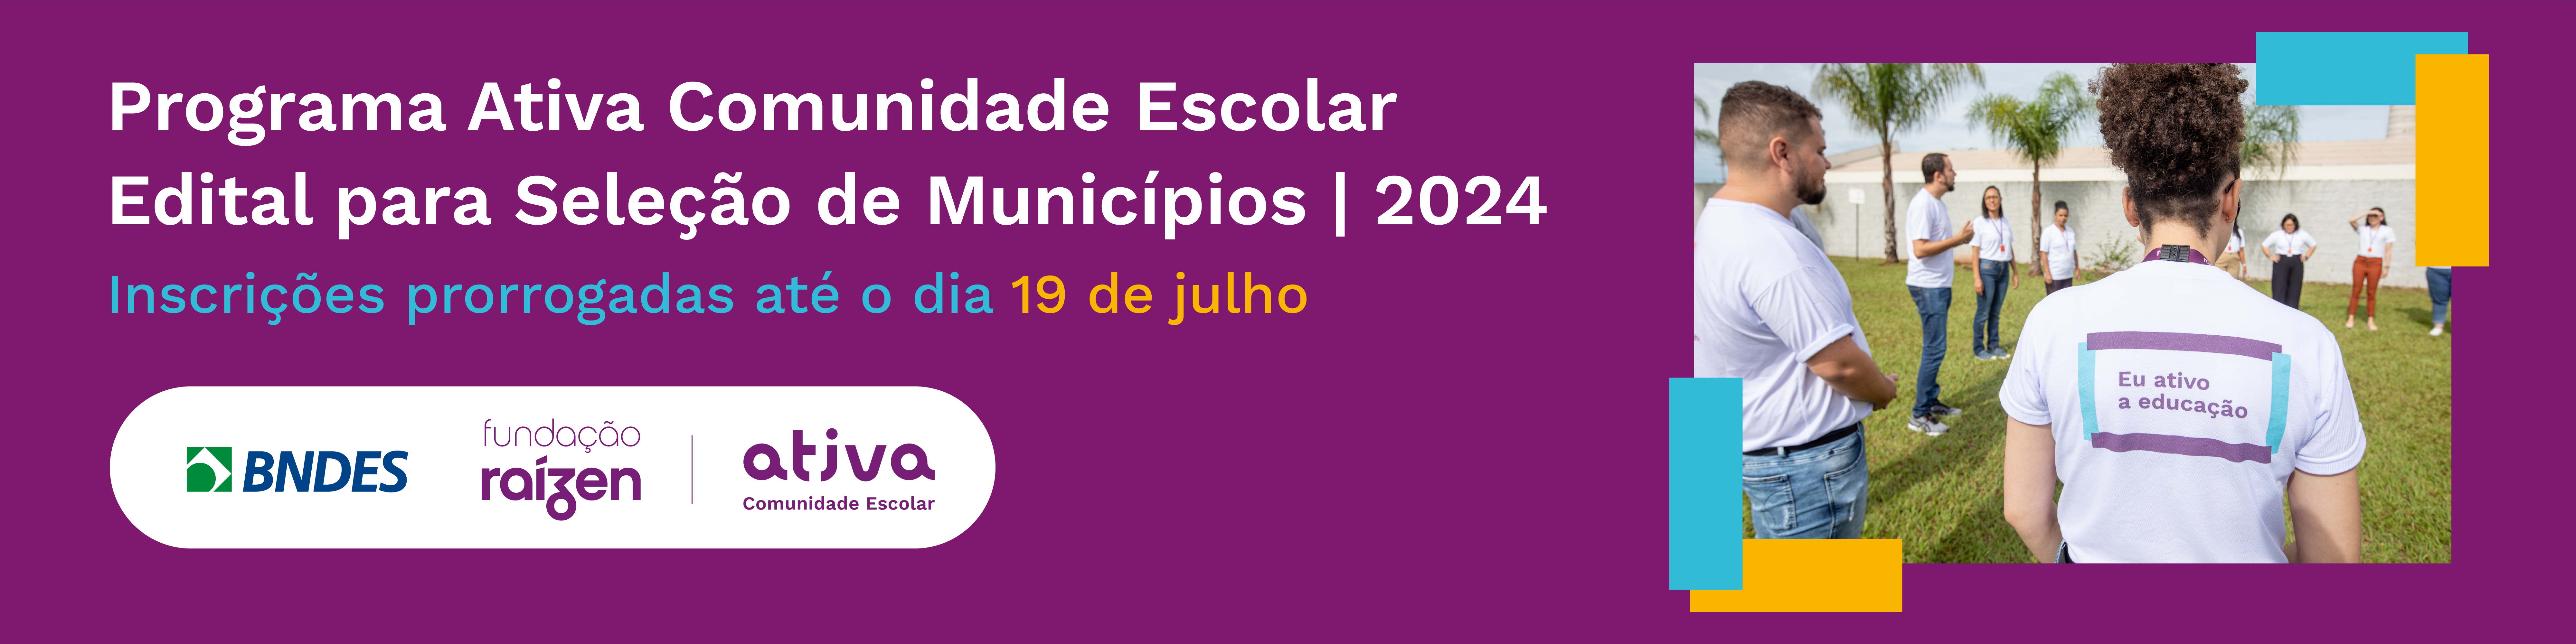 Banner Programa Ativa Comunidade Escolar - Edital para Seleção de Municípios | 2024 (Ciclo II)